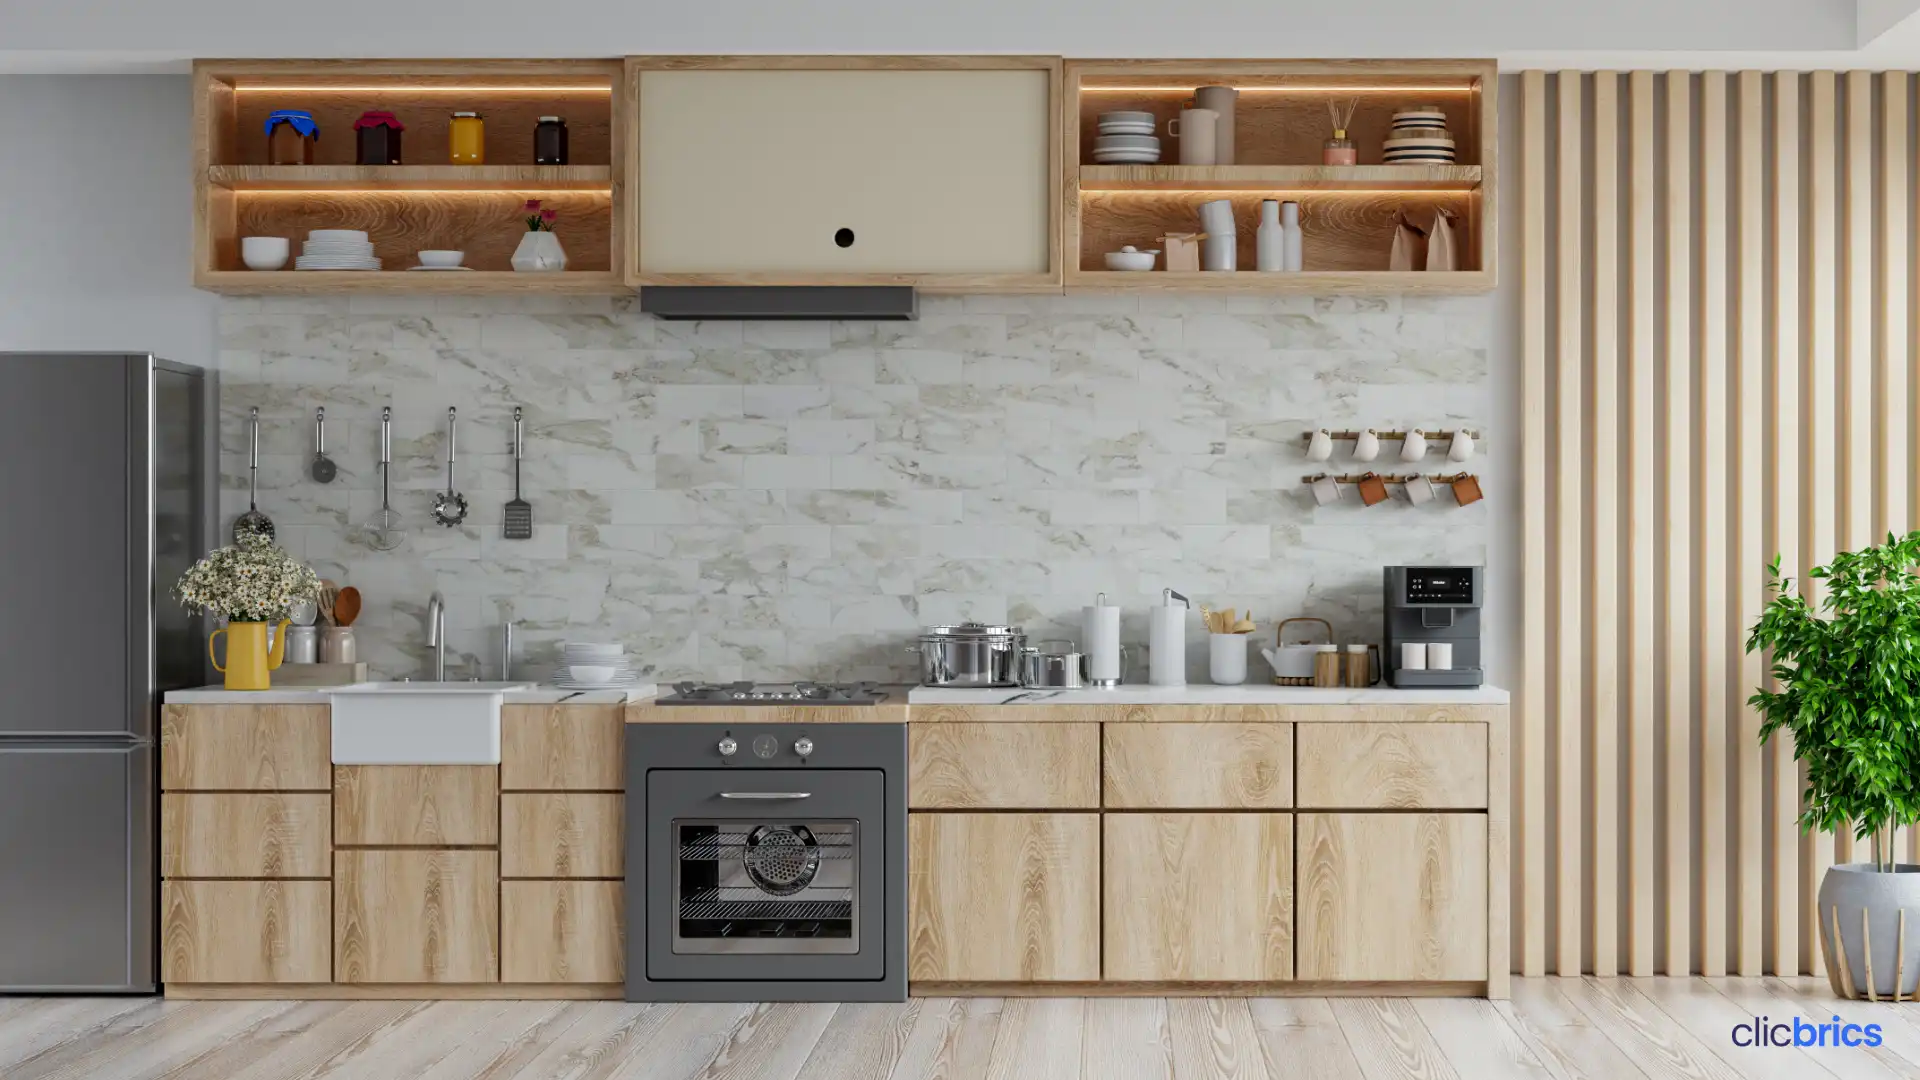 parallel kitchen interior design